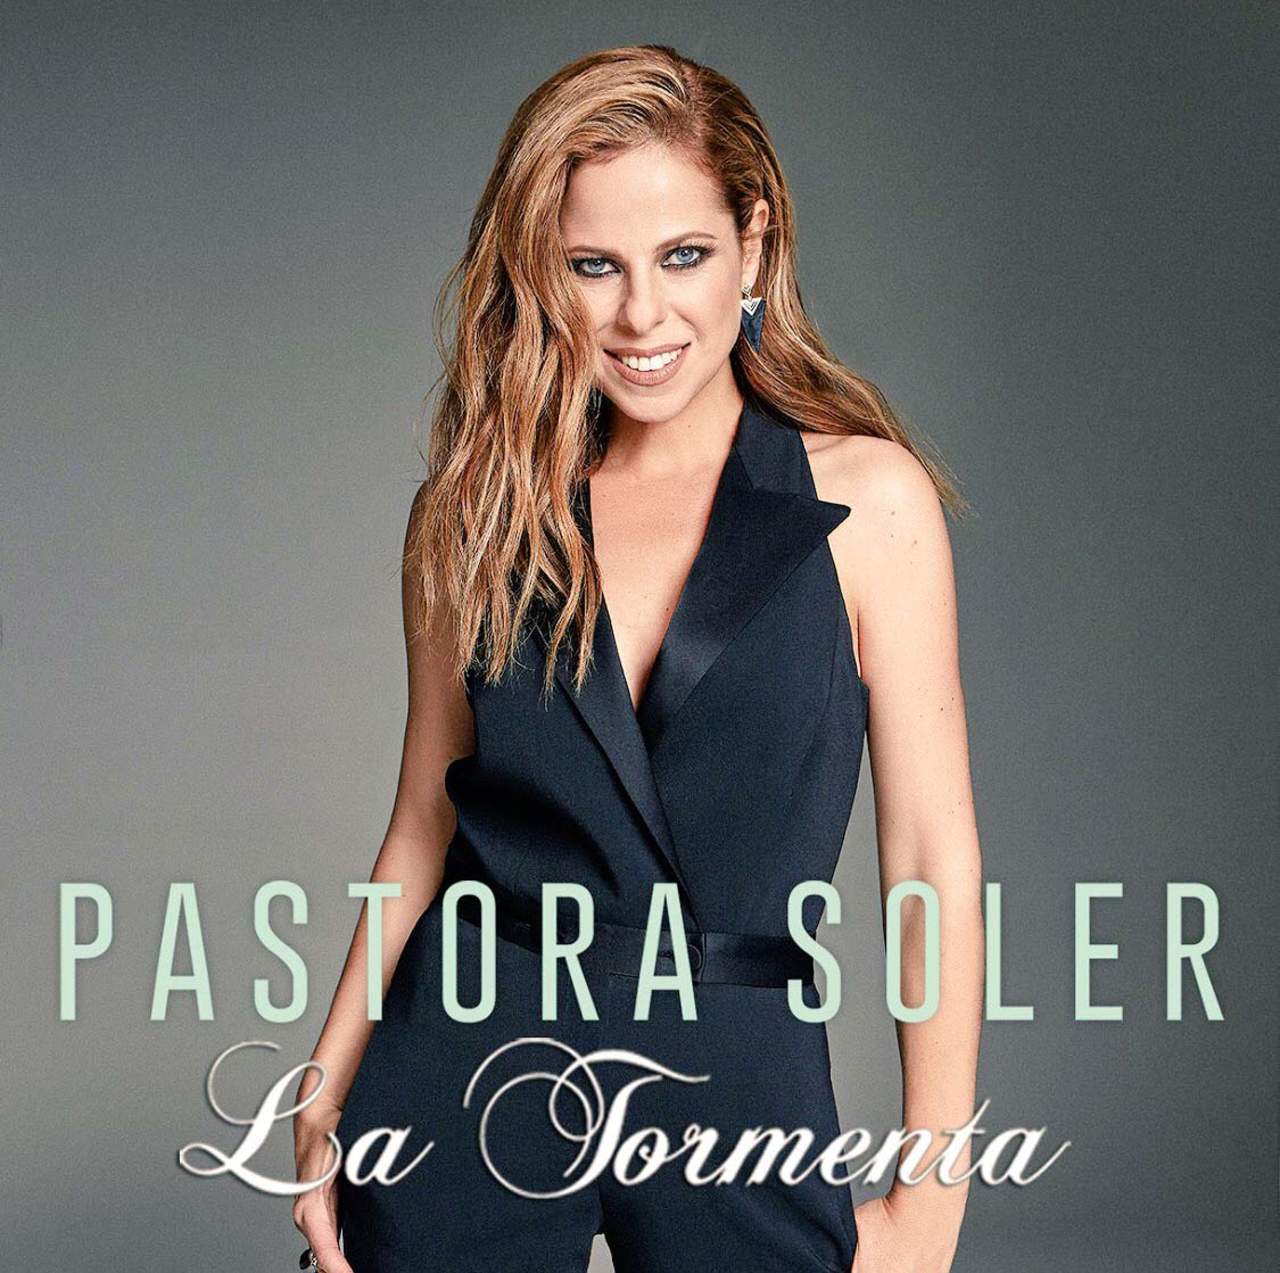 La cantante recién lanzó a plataformas digitales su nuevo sencillo denominado La tormenta, el cual ha causado sensación tanto en España como en otras nacionales. (ESPECIAL)